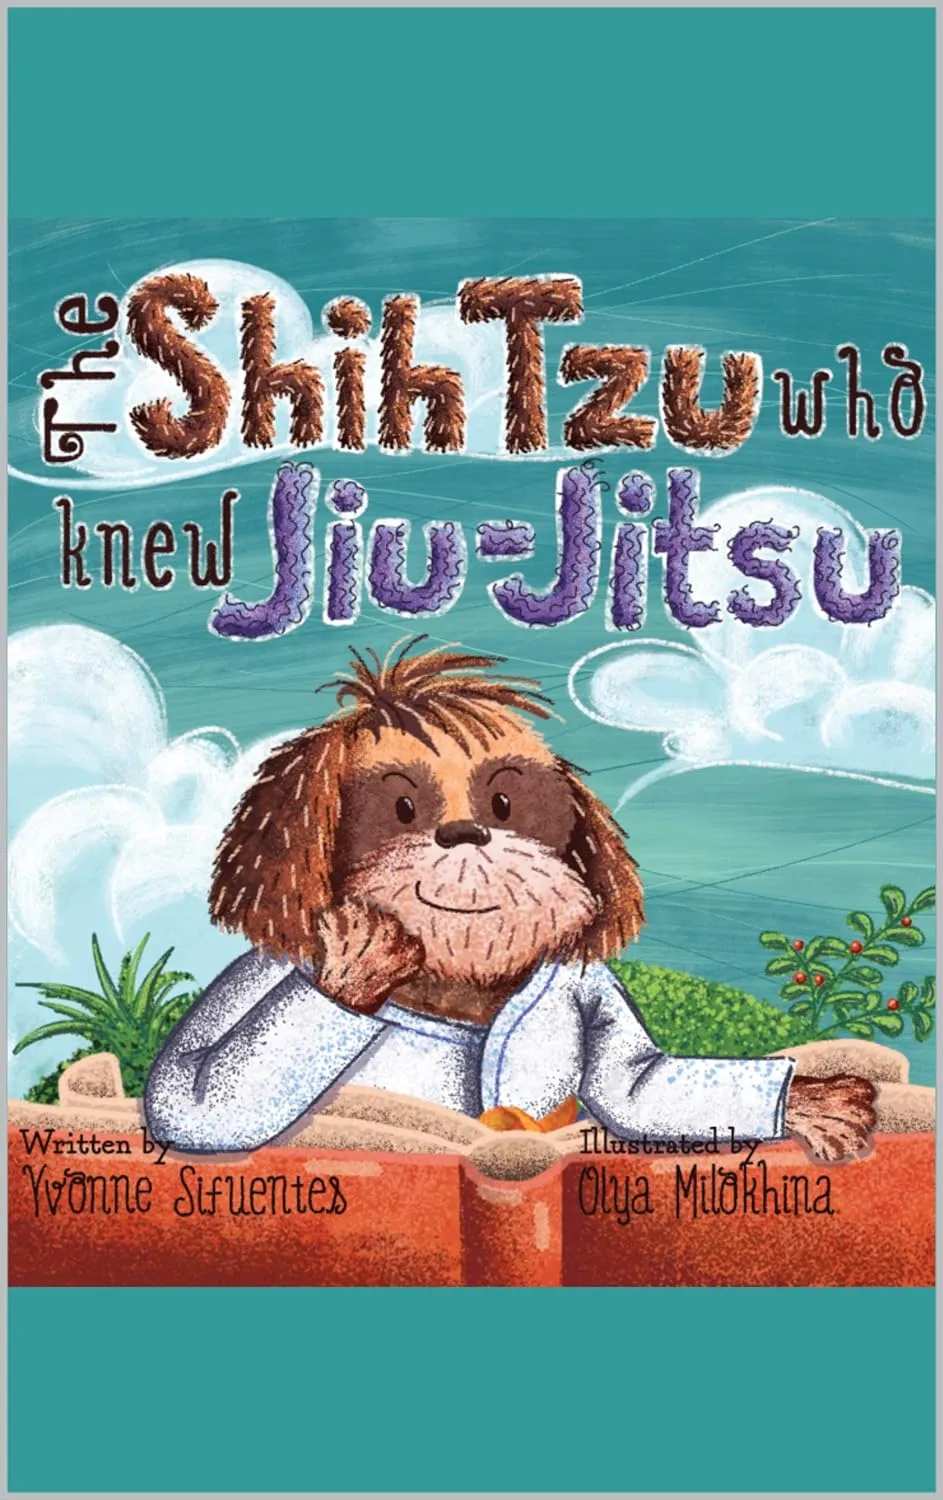 The Shih Tzu Who Knew Jiu-Jitsu